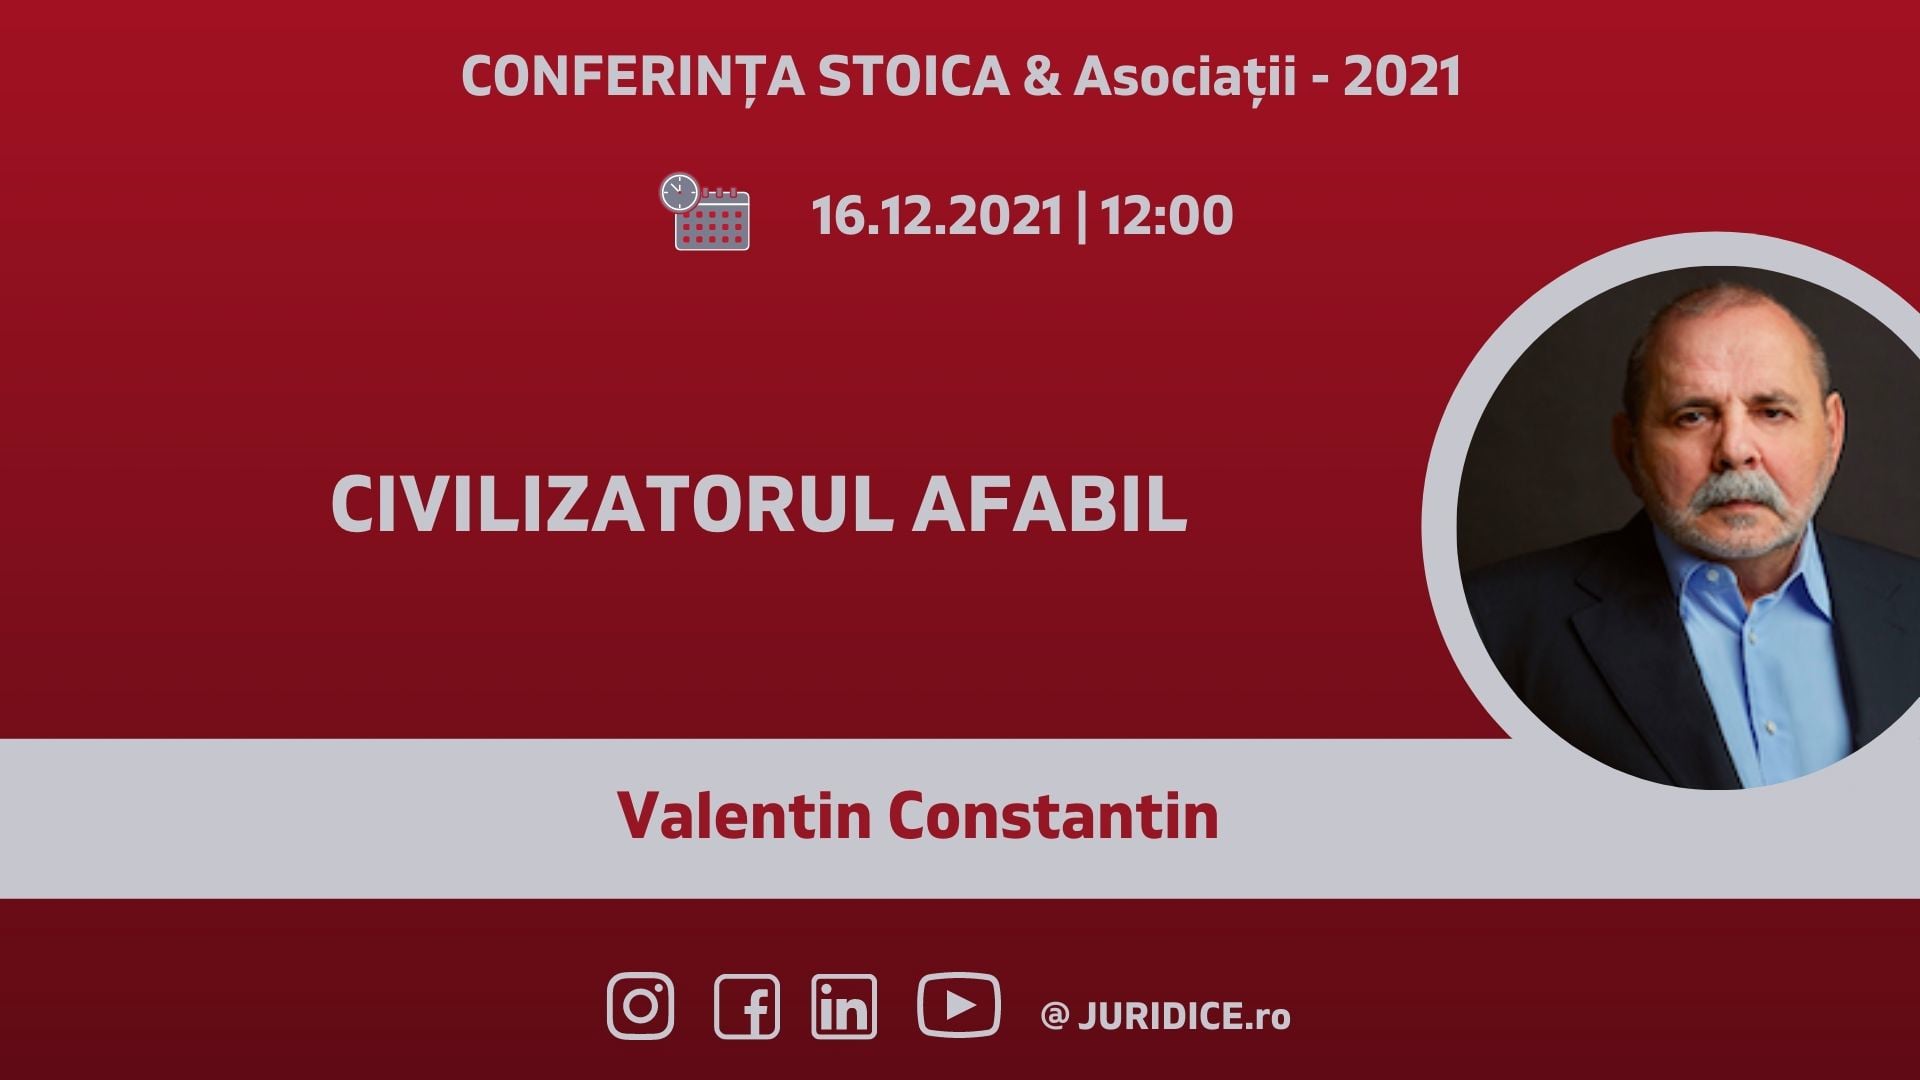 Civilizatorul afabil. Valentin Constantin în conferința STOICA & Asociații